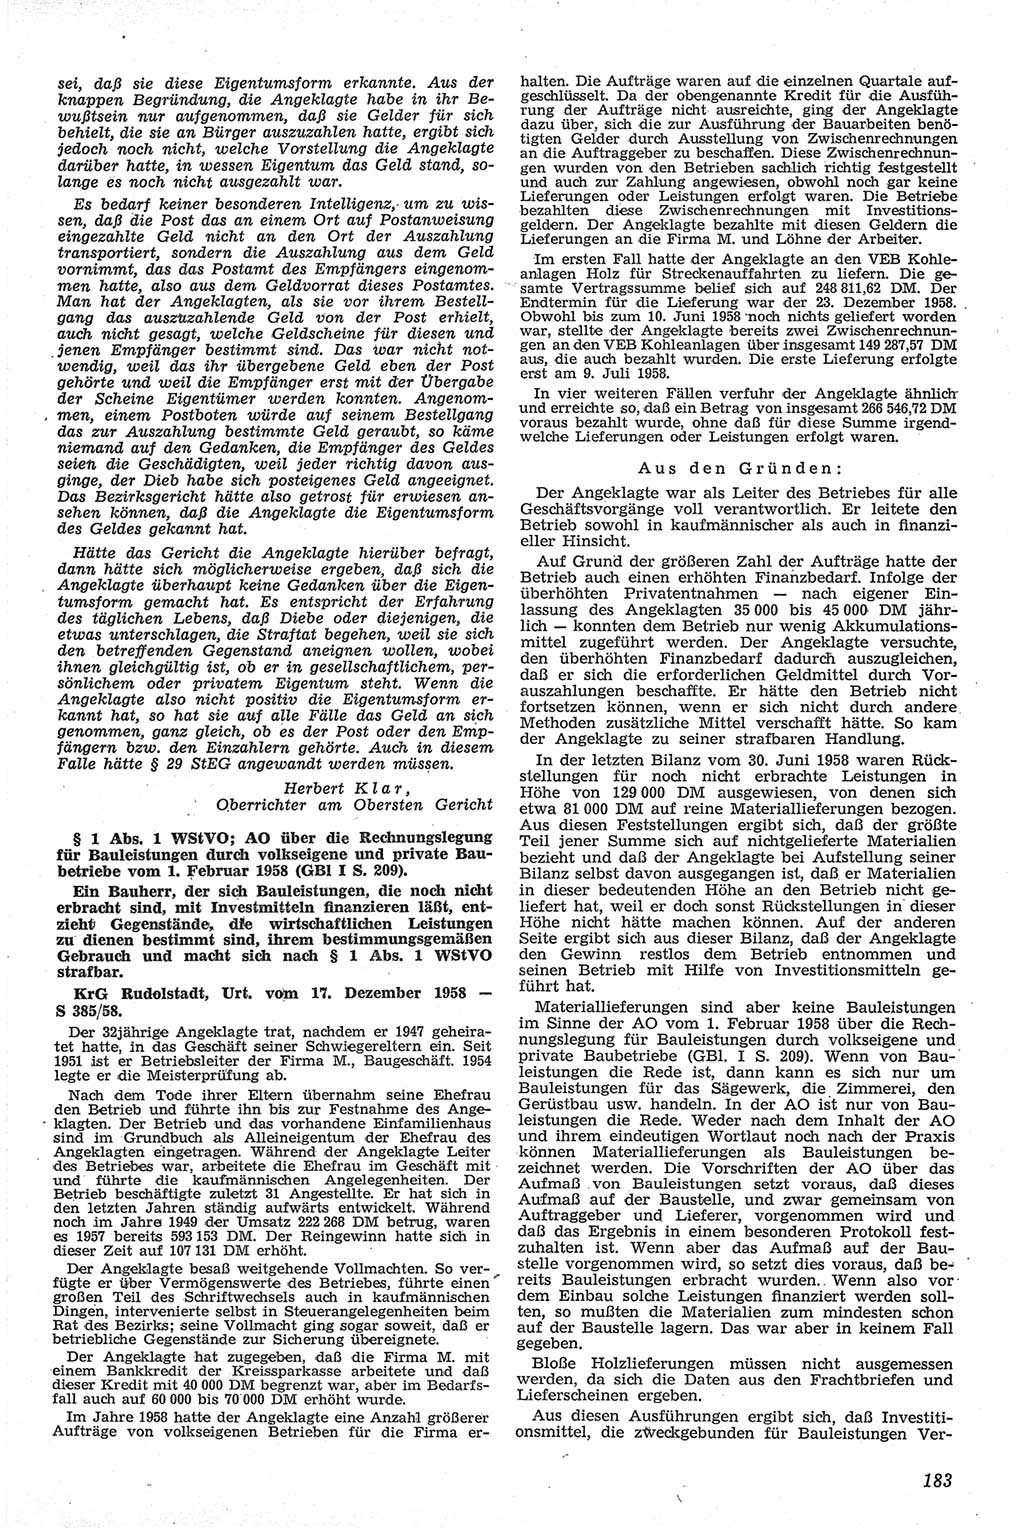 Neue Justiz (NJ), Zeitschrift für Recht und Rechtswissenschaft [Deutsche Demokratische Republik (DDR)], 13. Jahrgang 1959, Seite 183 (NJ DDR 1959, S. 183)